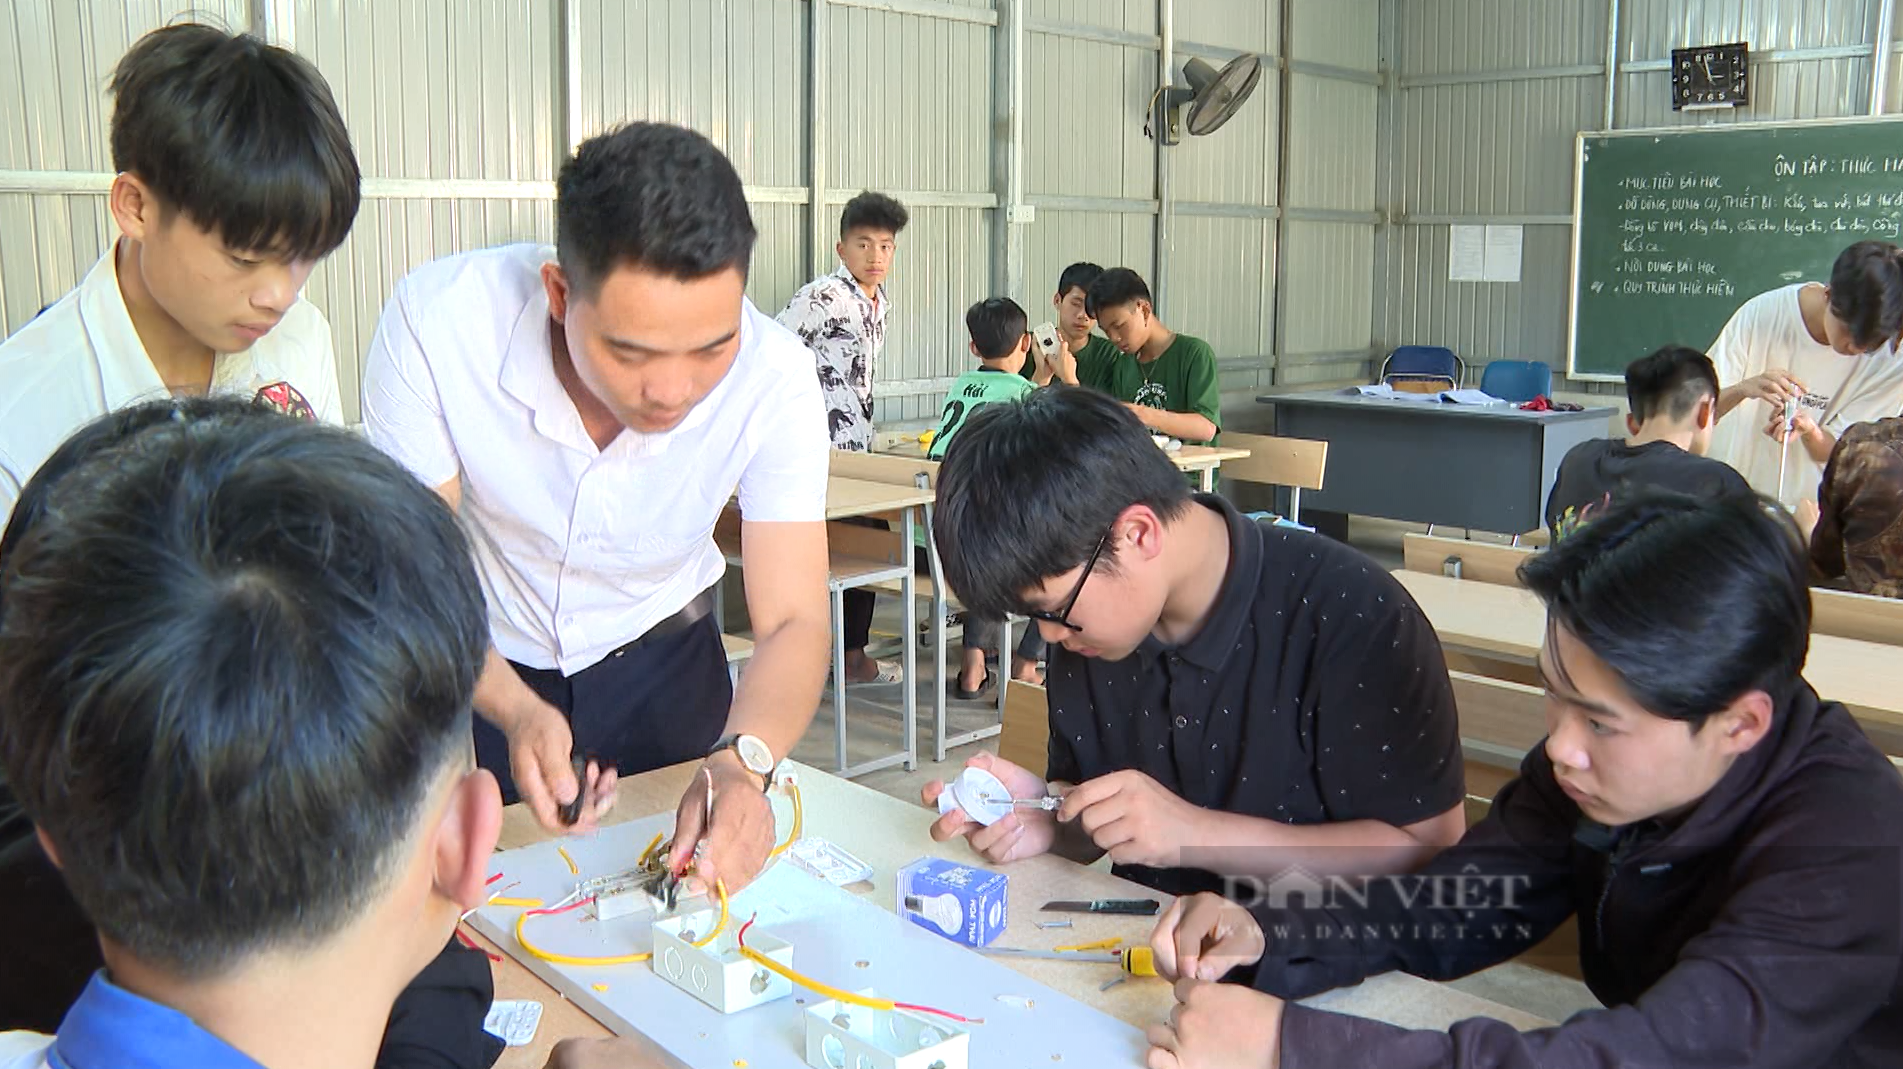 Đào tạo nghề cho lao động nông thôn ở Lai Châu, một giải pháp căn cơ để giảm nghèo - Ảnh 5.